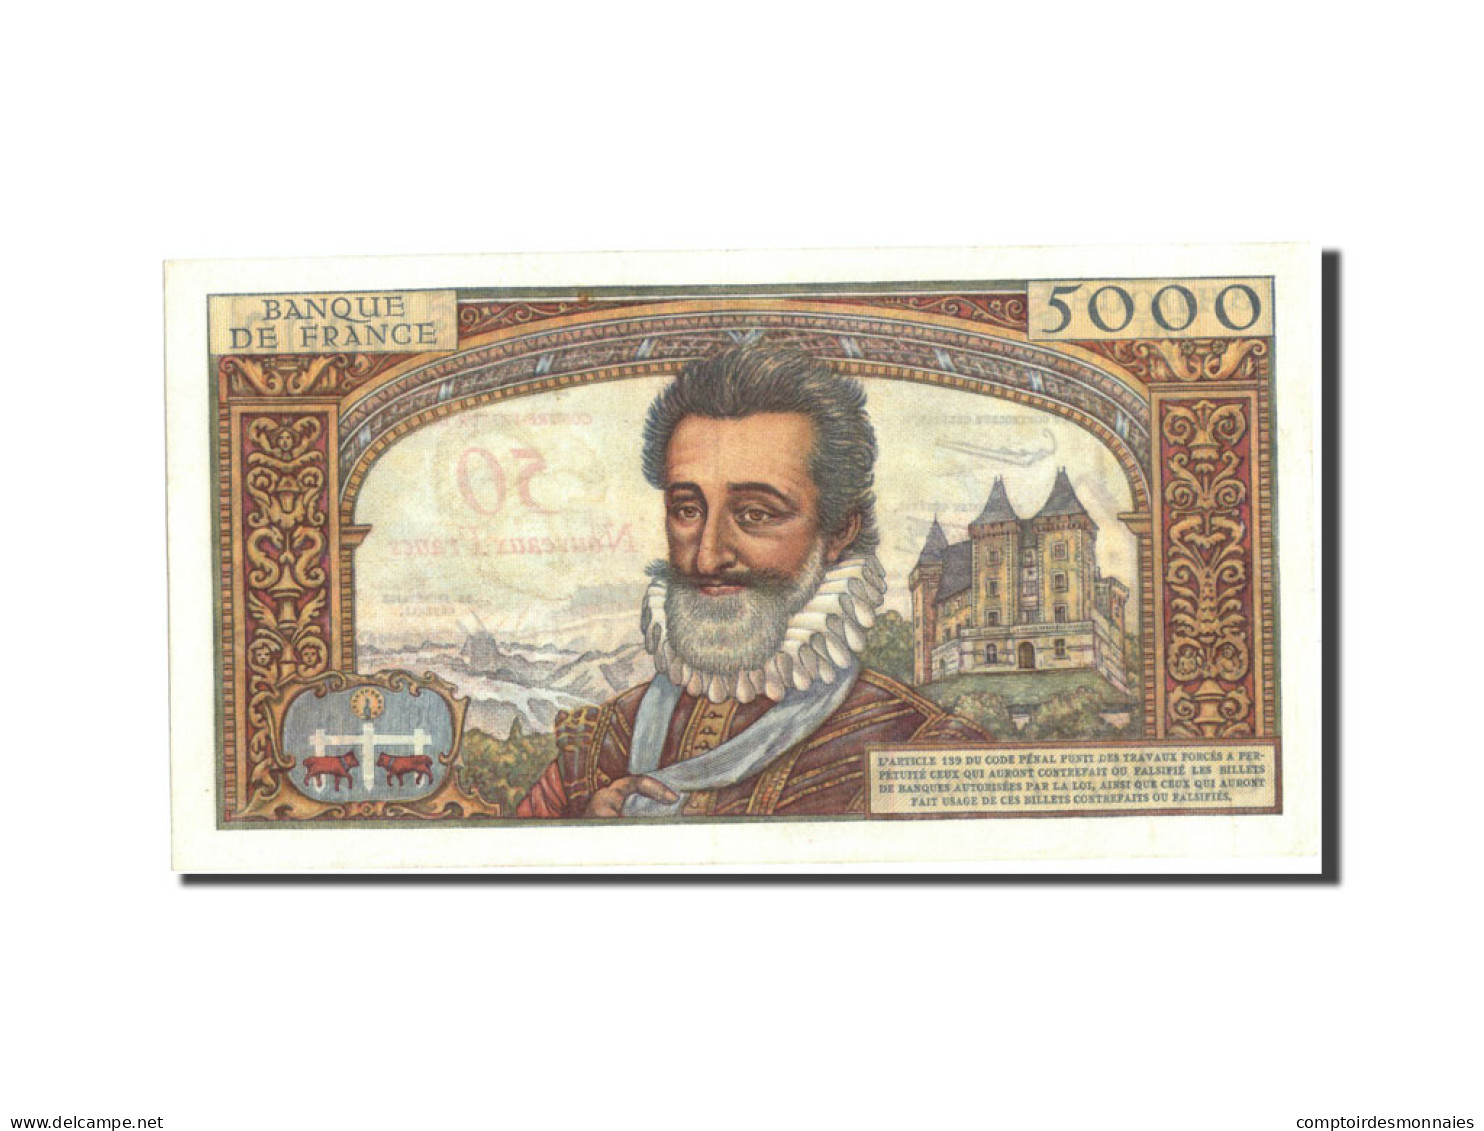 Billet, France, 50 Nouveaux Francs On 5000 Francs, 1955-1959 Overprinted With - 1955-1959 Surchargés En Nouveaux Francs